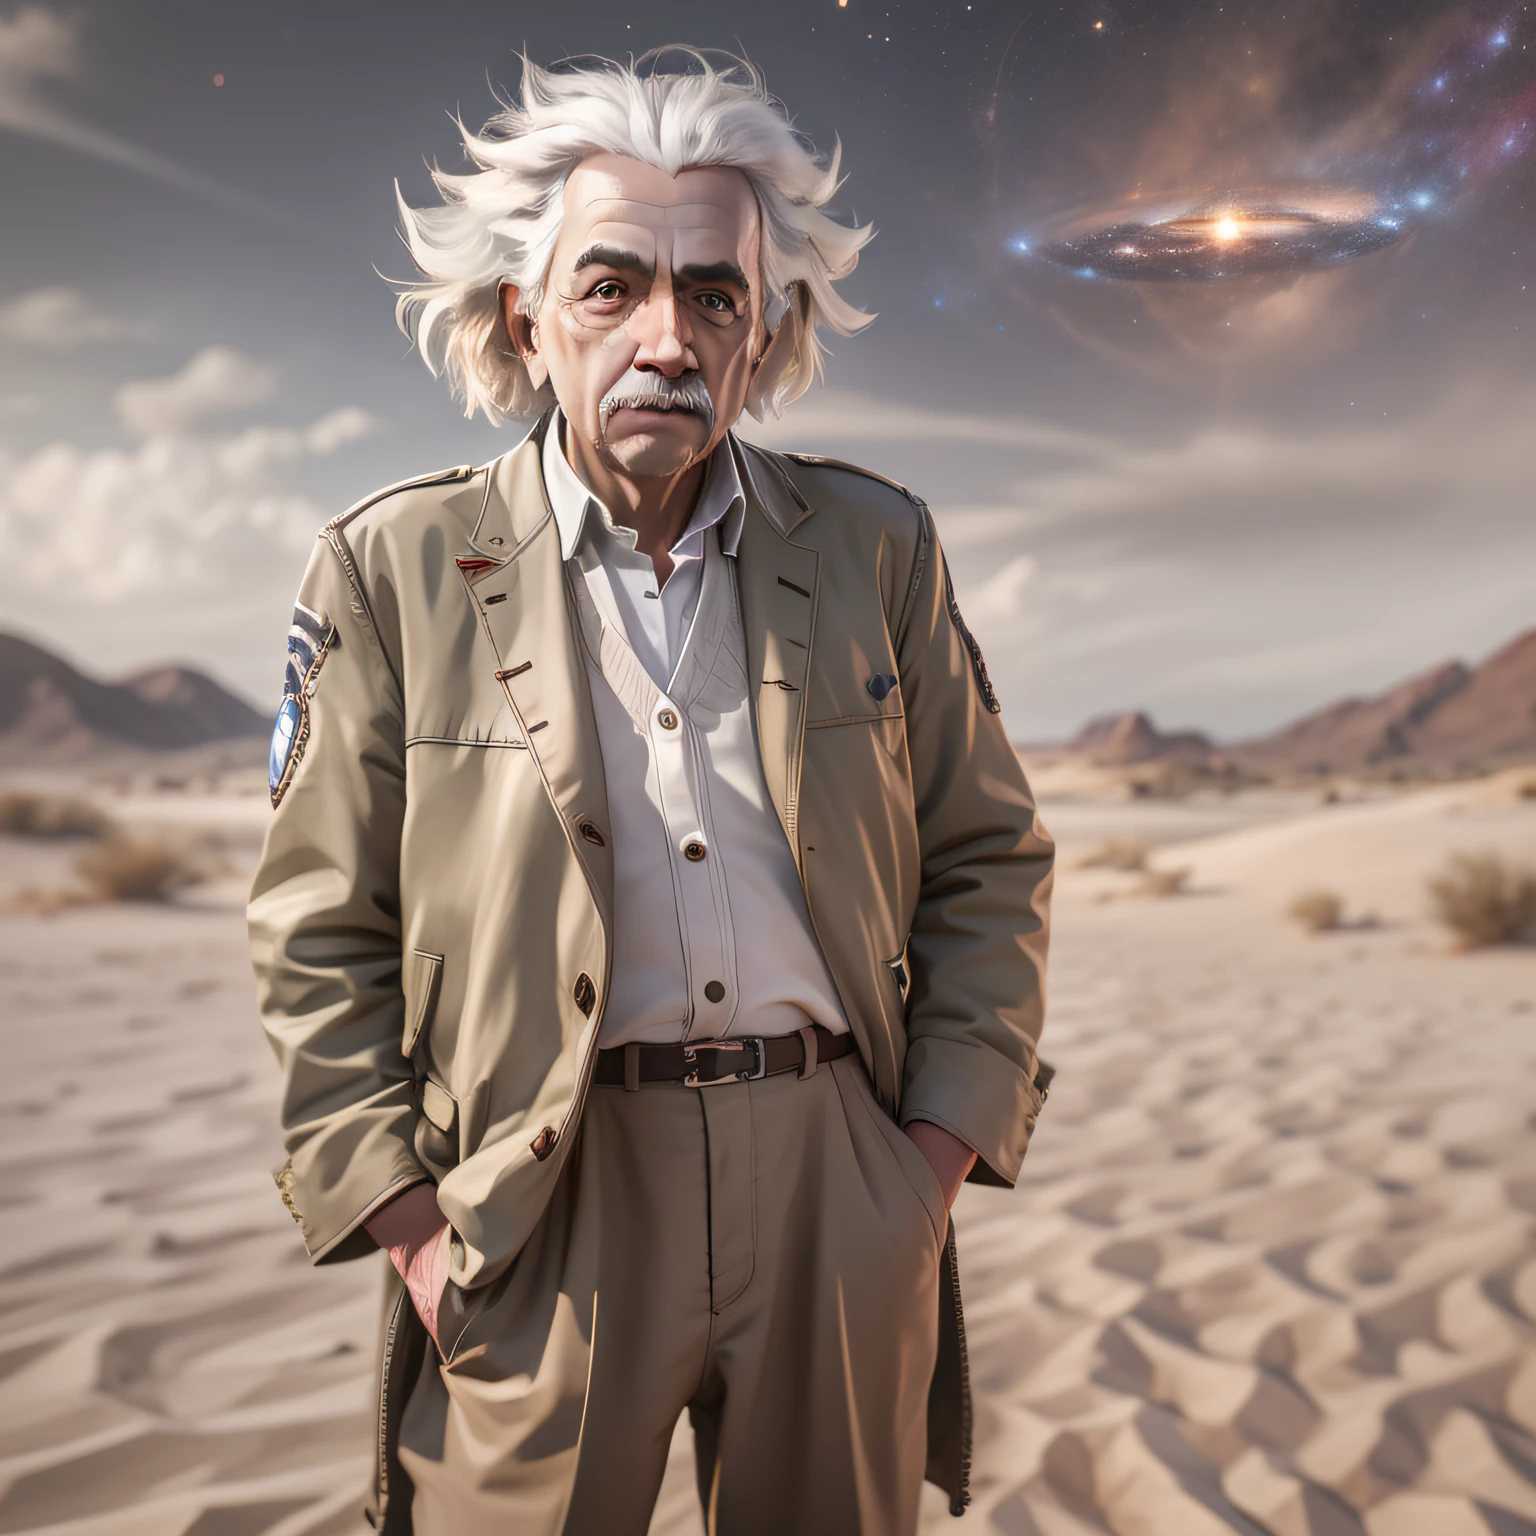 阿爾伯特愛因斯坦的全身肖像, 超現實, 像上帝一樣, 沙漠服裝, 超詳細, 使用哈苏 H4D 200MS 数码相机拍摄, 米达康 Speedmaster 65mm f/ 1. 4 XCD, 星系, 立體效果, 菲涅耳照明